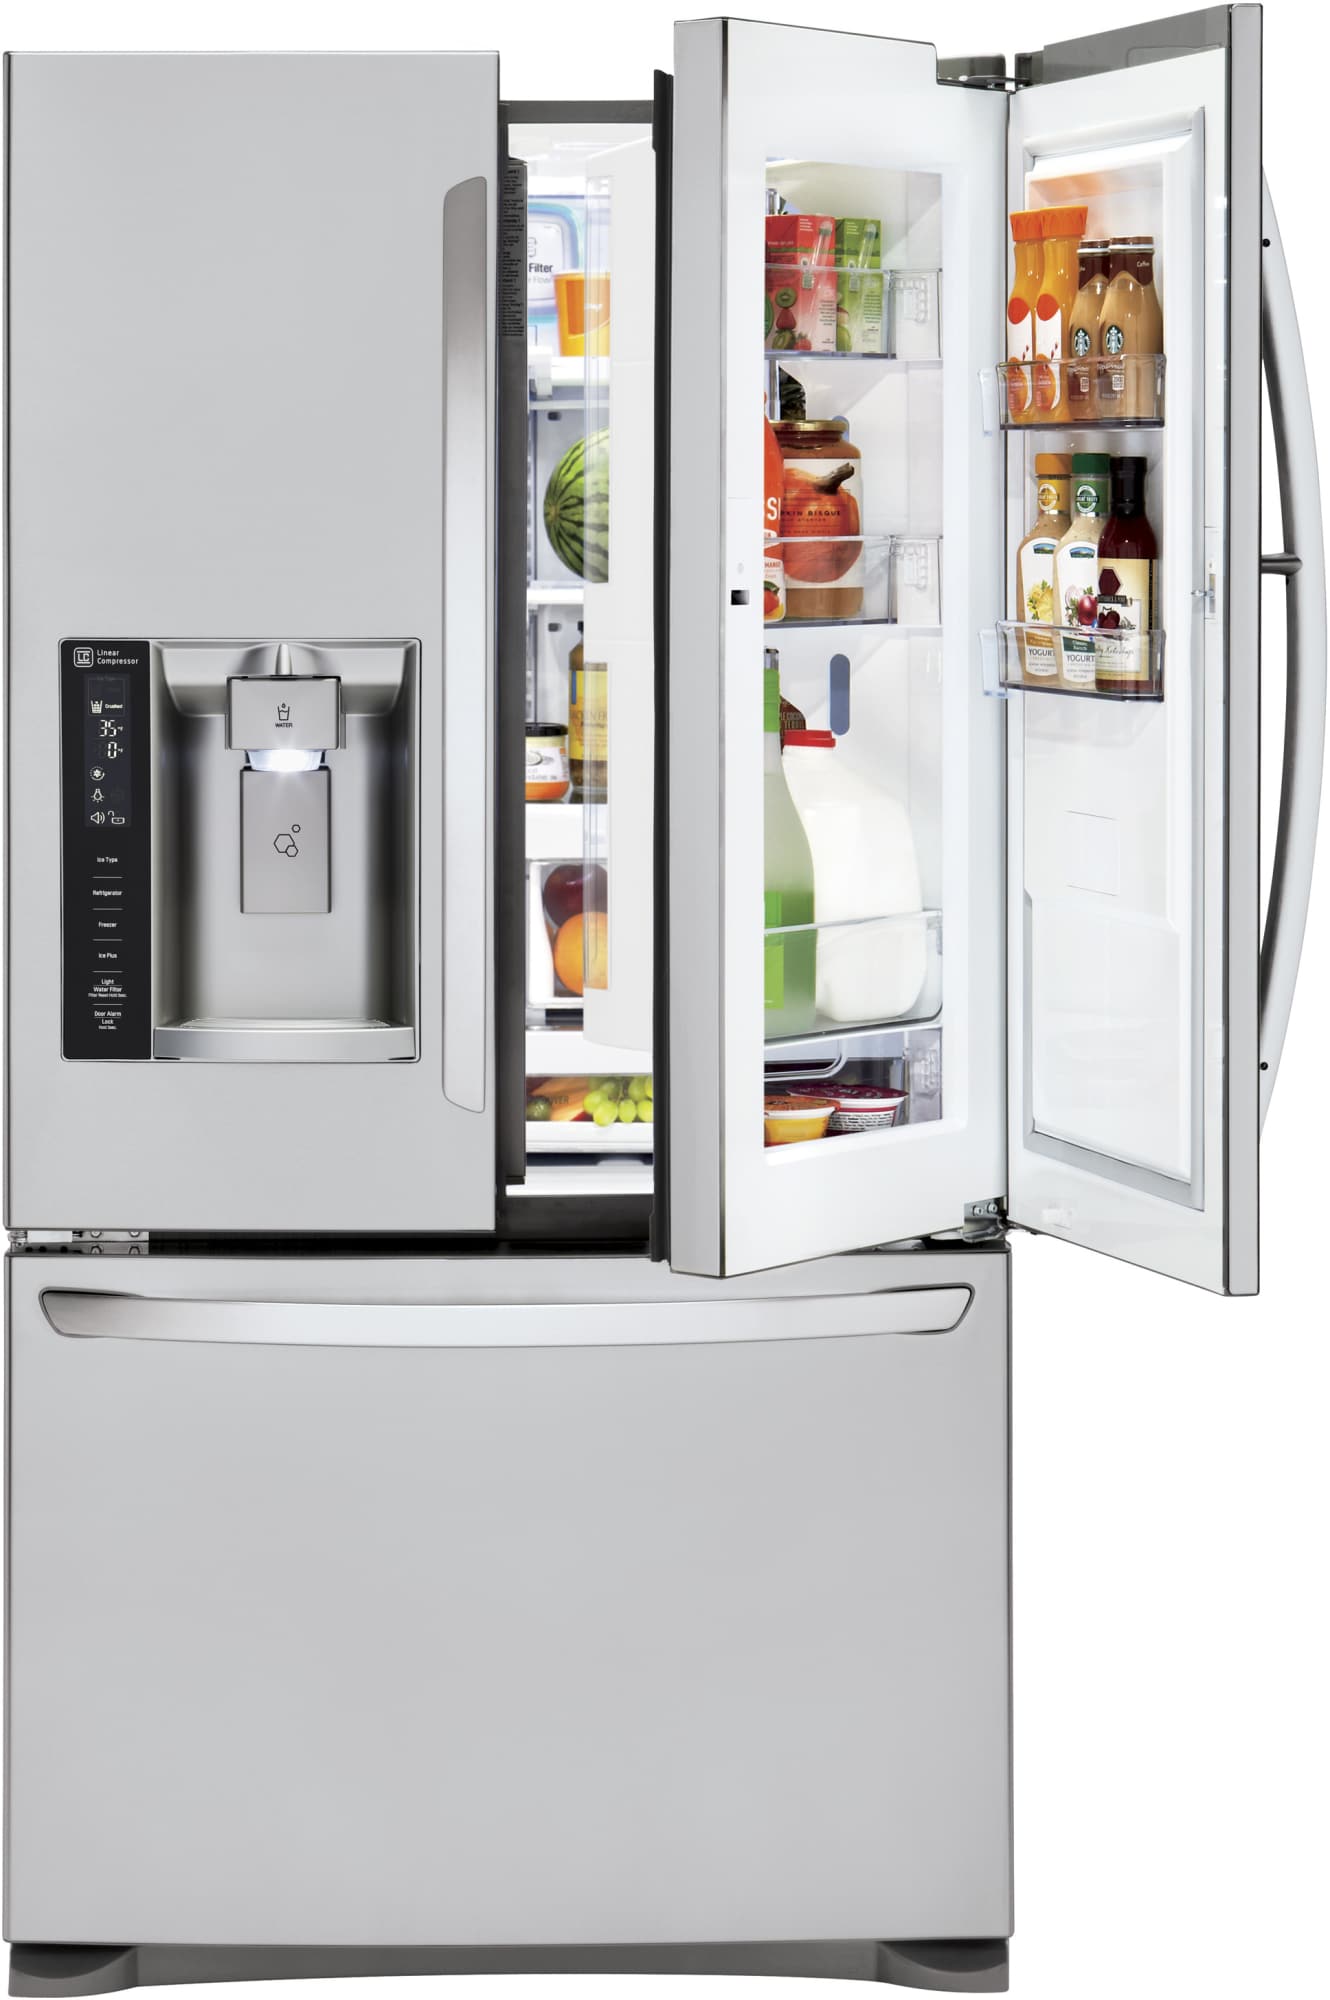 LG LFXS24566S 36 Inch French Door Refrigerator with Door-in-Door ...